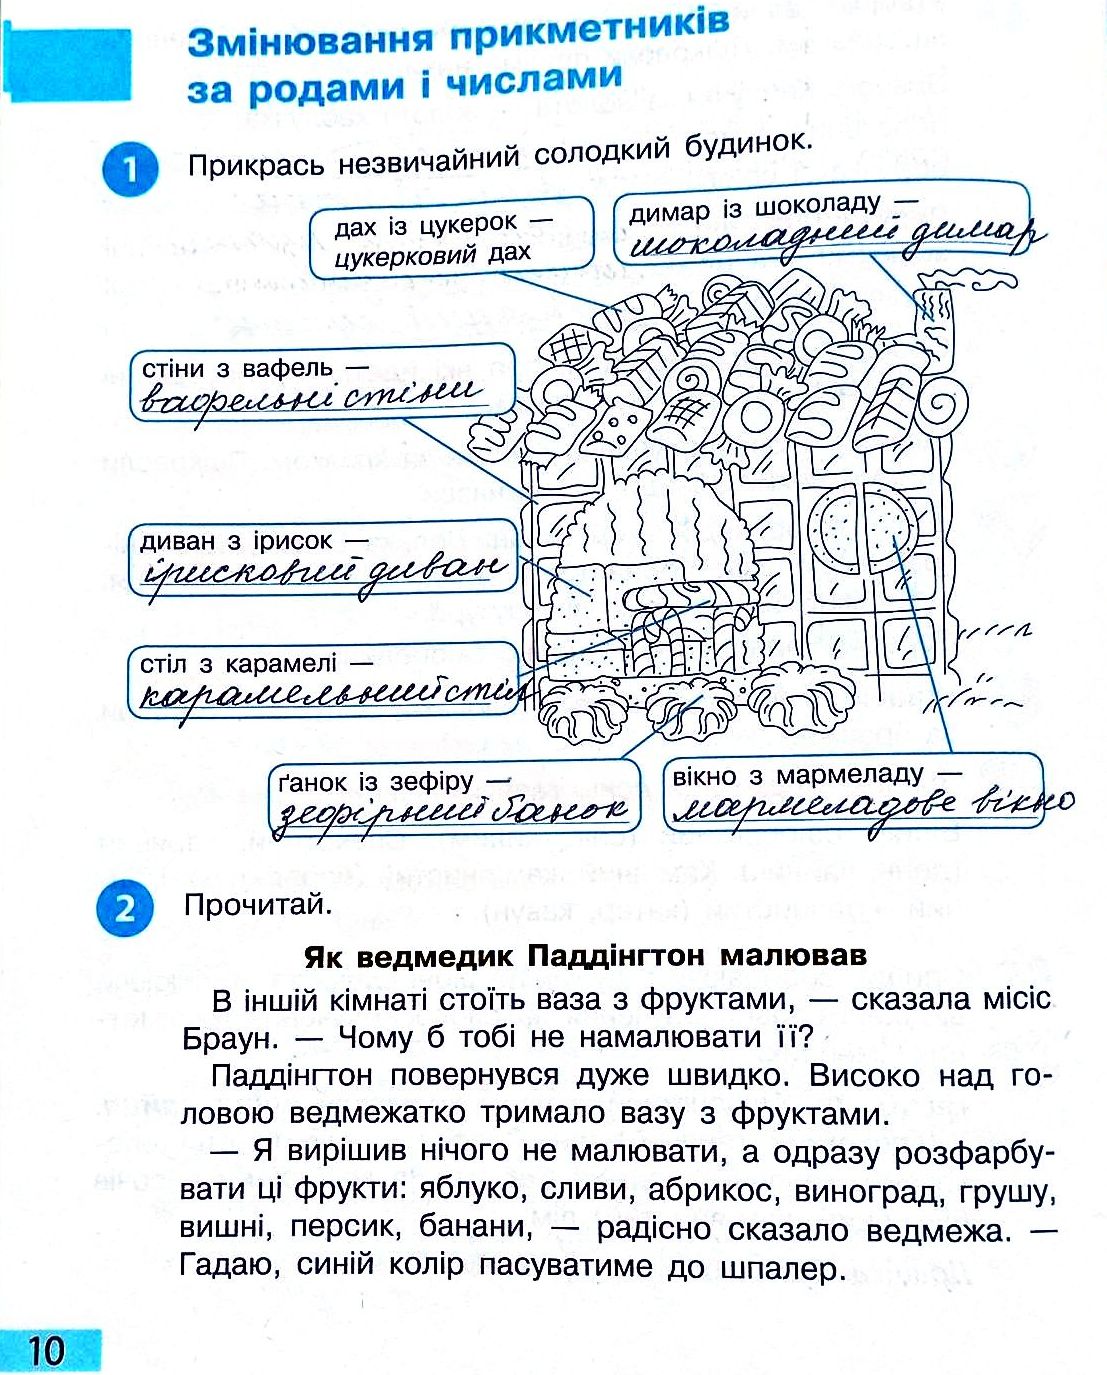 Сторінка 10 частина 2 гдз 3 клас робочий зошит українська мова Большакова